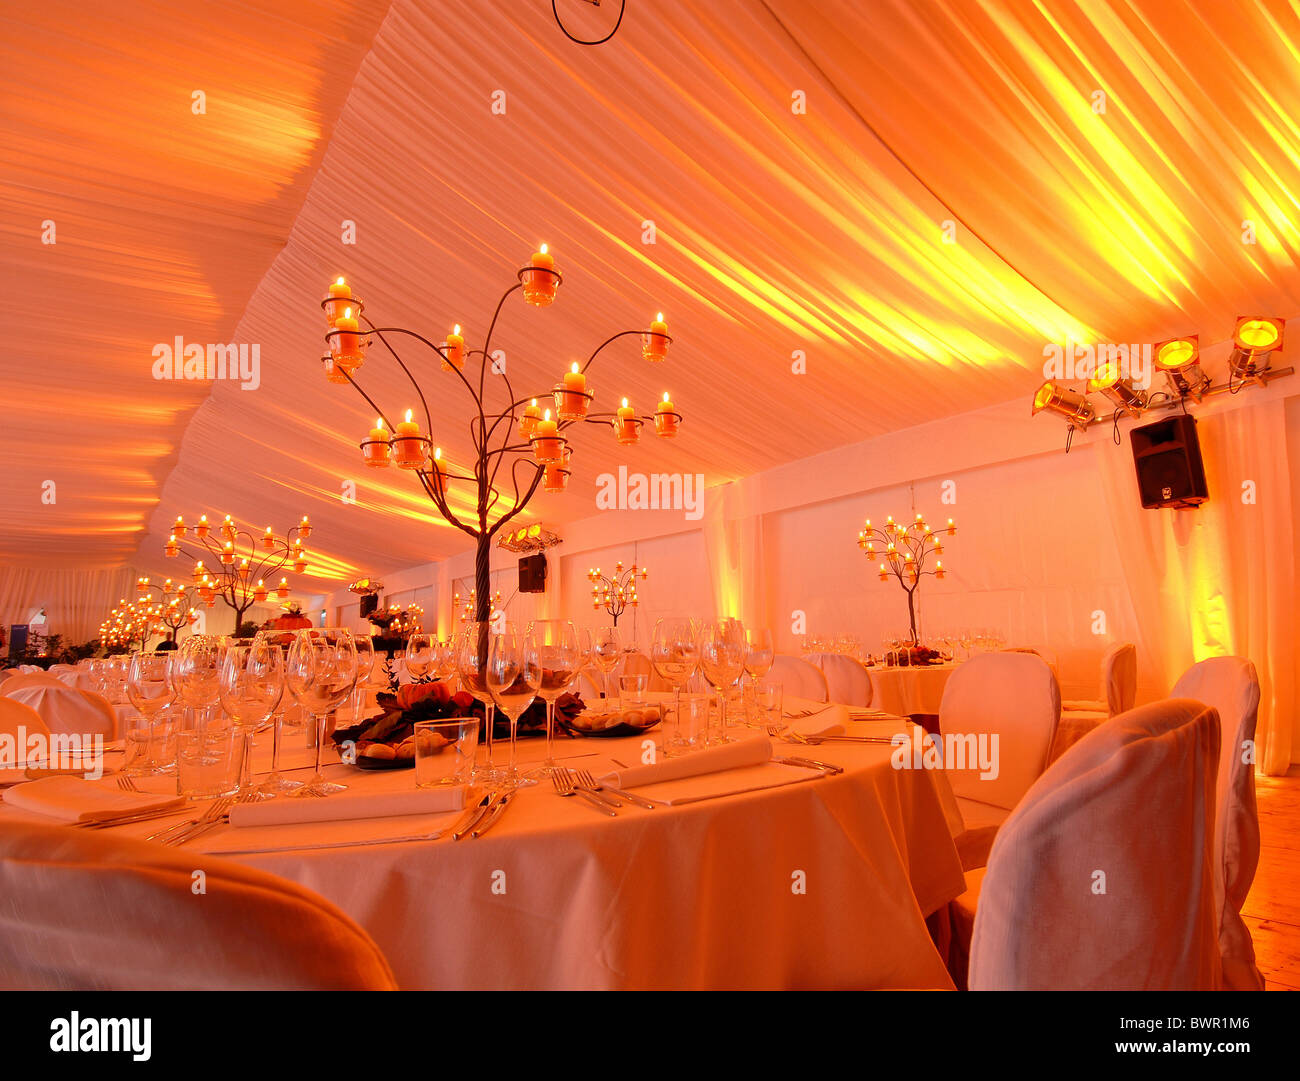 Vie de l'événement ambiance bougies chandelles ambiance table chaises tables gastronomie lunettes classy rencontrez Banque D'Images